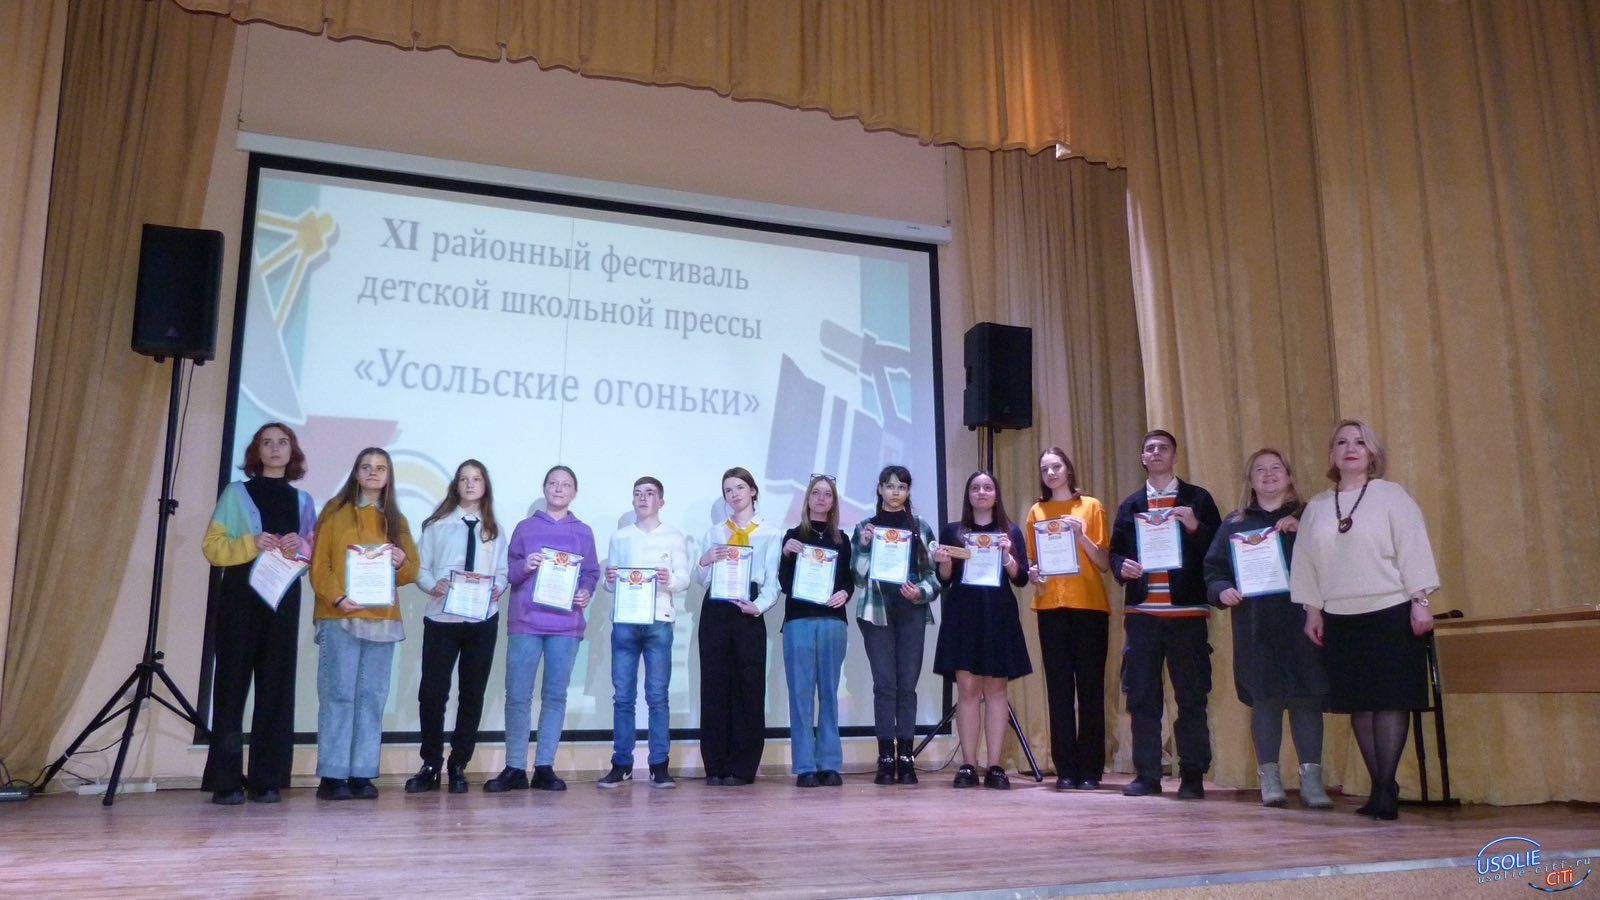 Фестивалили школьные пресс-центры Усольского района